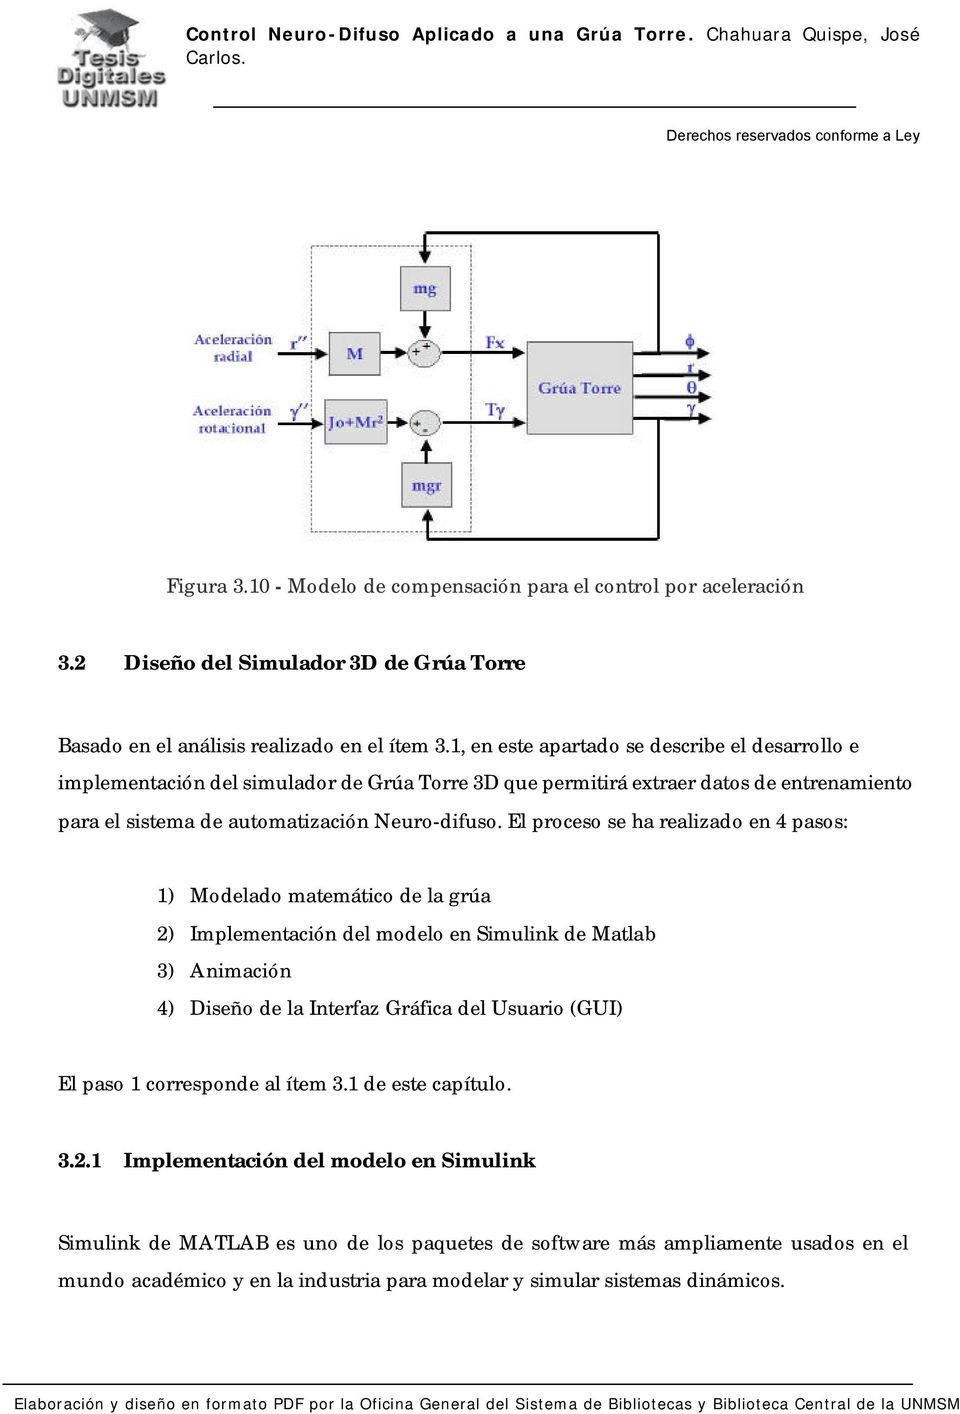 El proceso se ha realizado en 4 pasos: 1) Modelado matemático de la grúa 2) Implementación del modelo en Simulink de Matlab 3) Animación 4) Diseño de la Interfaz Gráfica del Usuario (GUI) El paso